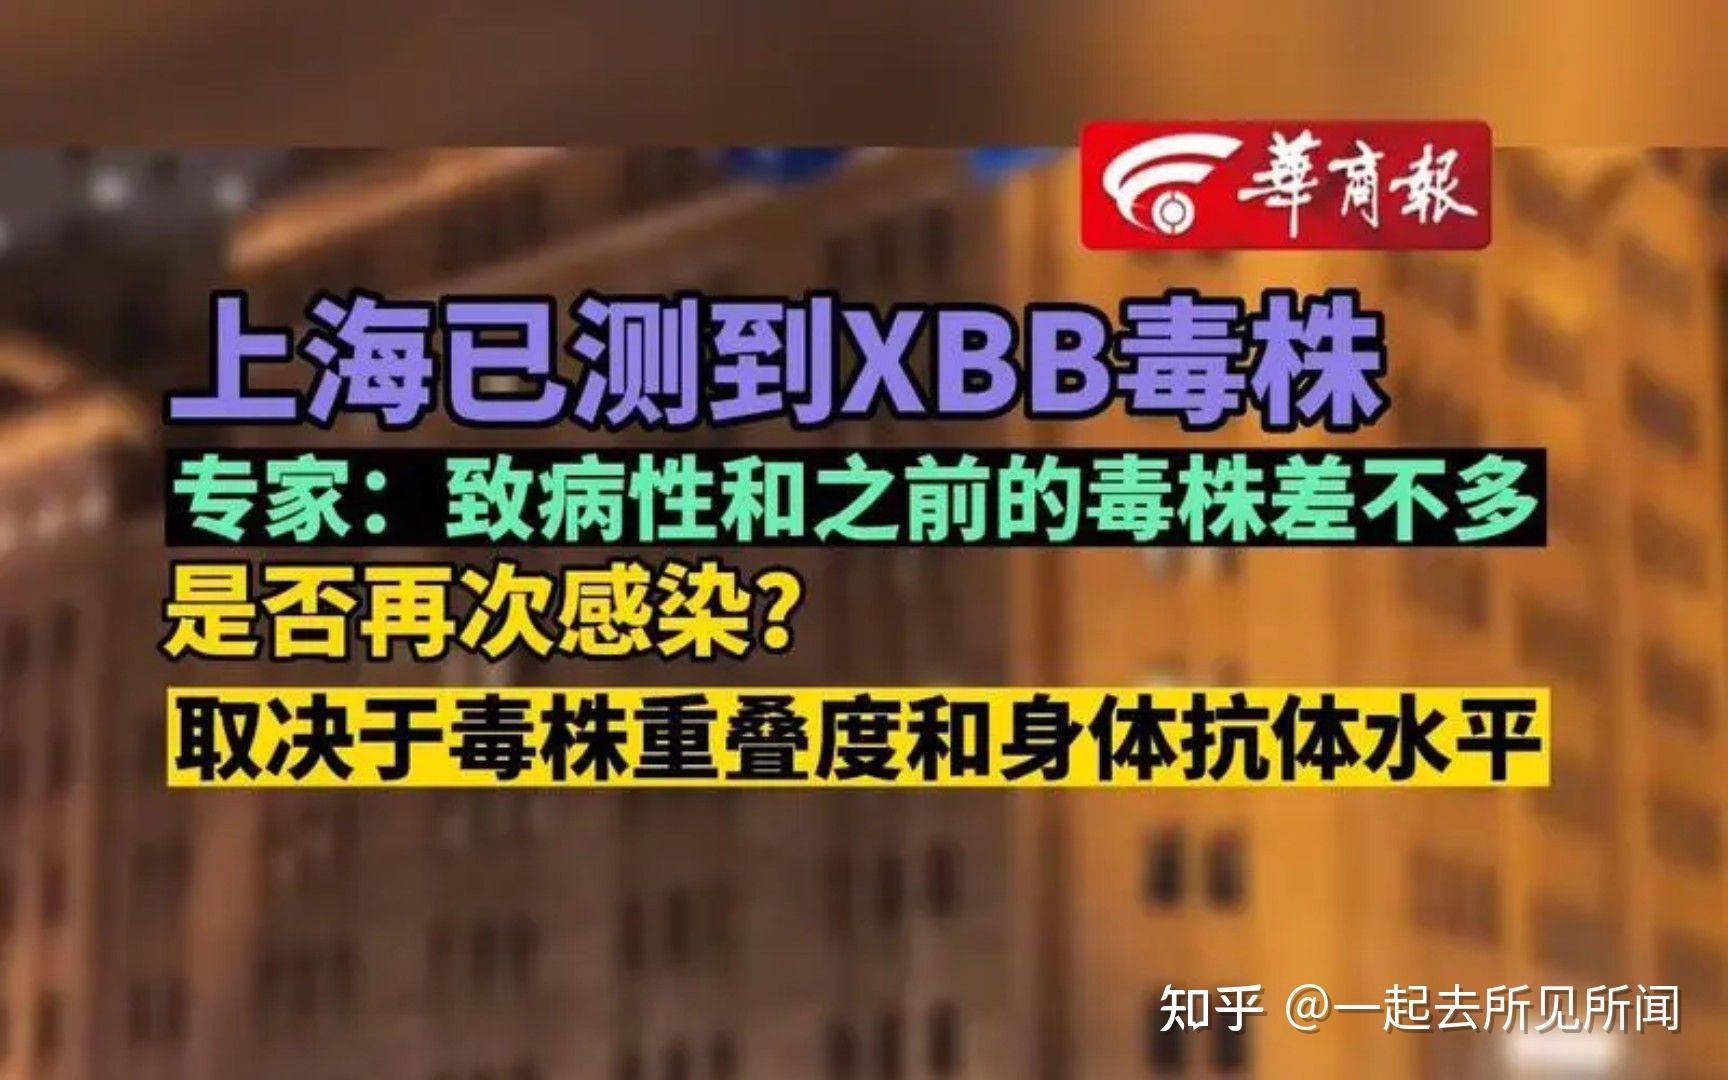 上海已测到XBB毒株！主攻心脑血管和肠胃”是无稽之谈！ - 知乎